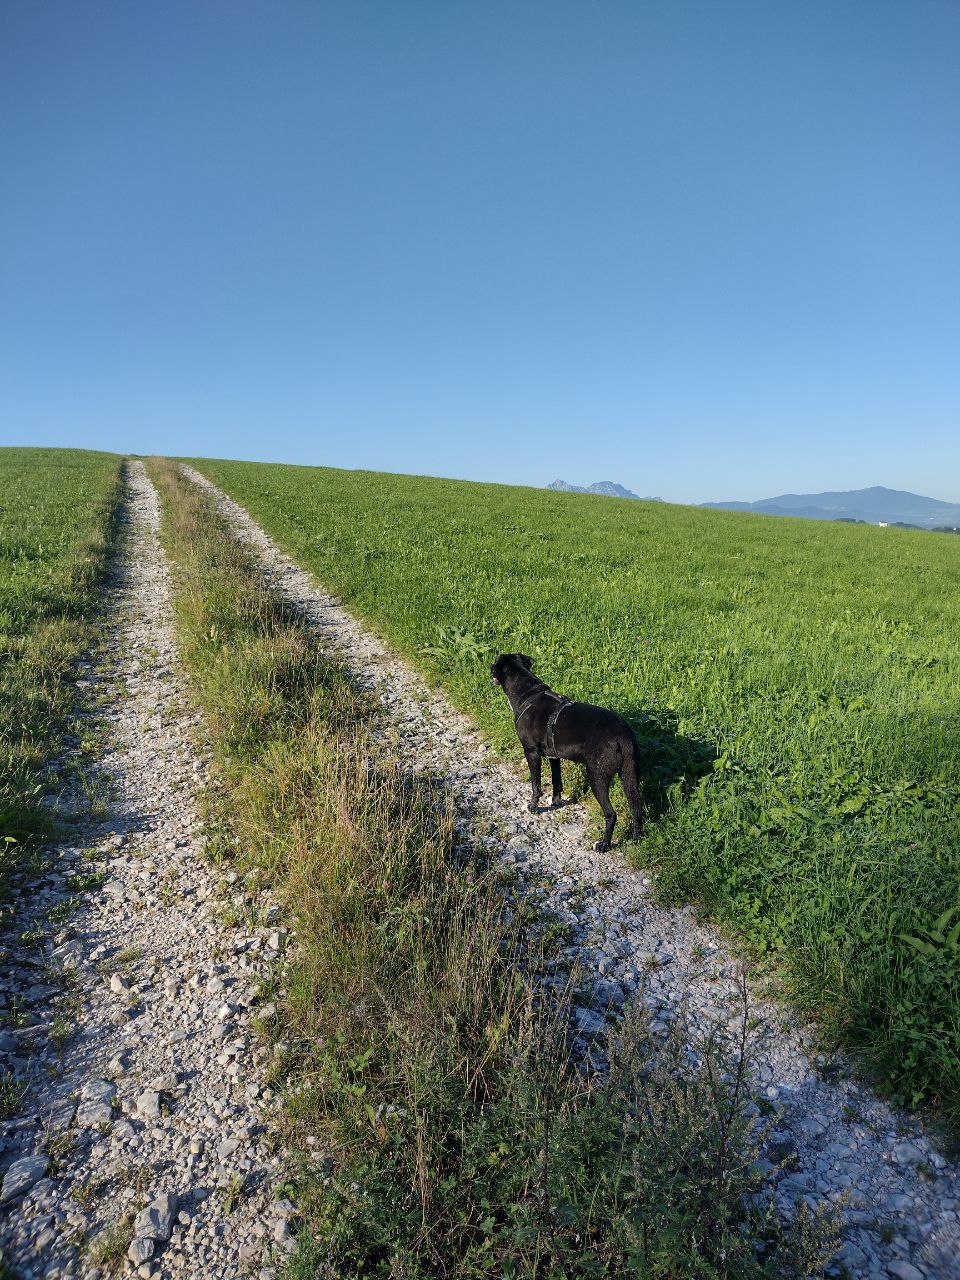 Auf einem Schotterweg zwischen zwei Feldern steht ein schwarzer Hund und schaut in die Ferne, am Horizont sieht man Berge.